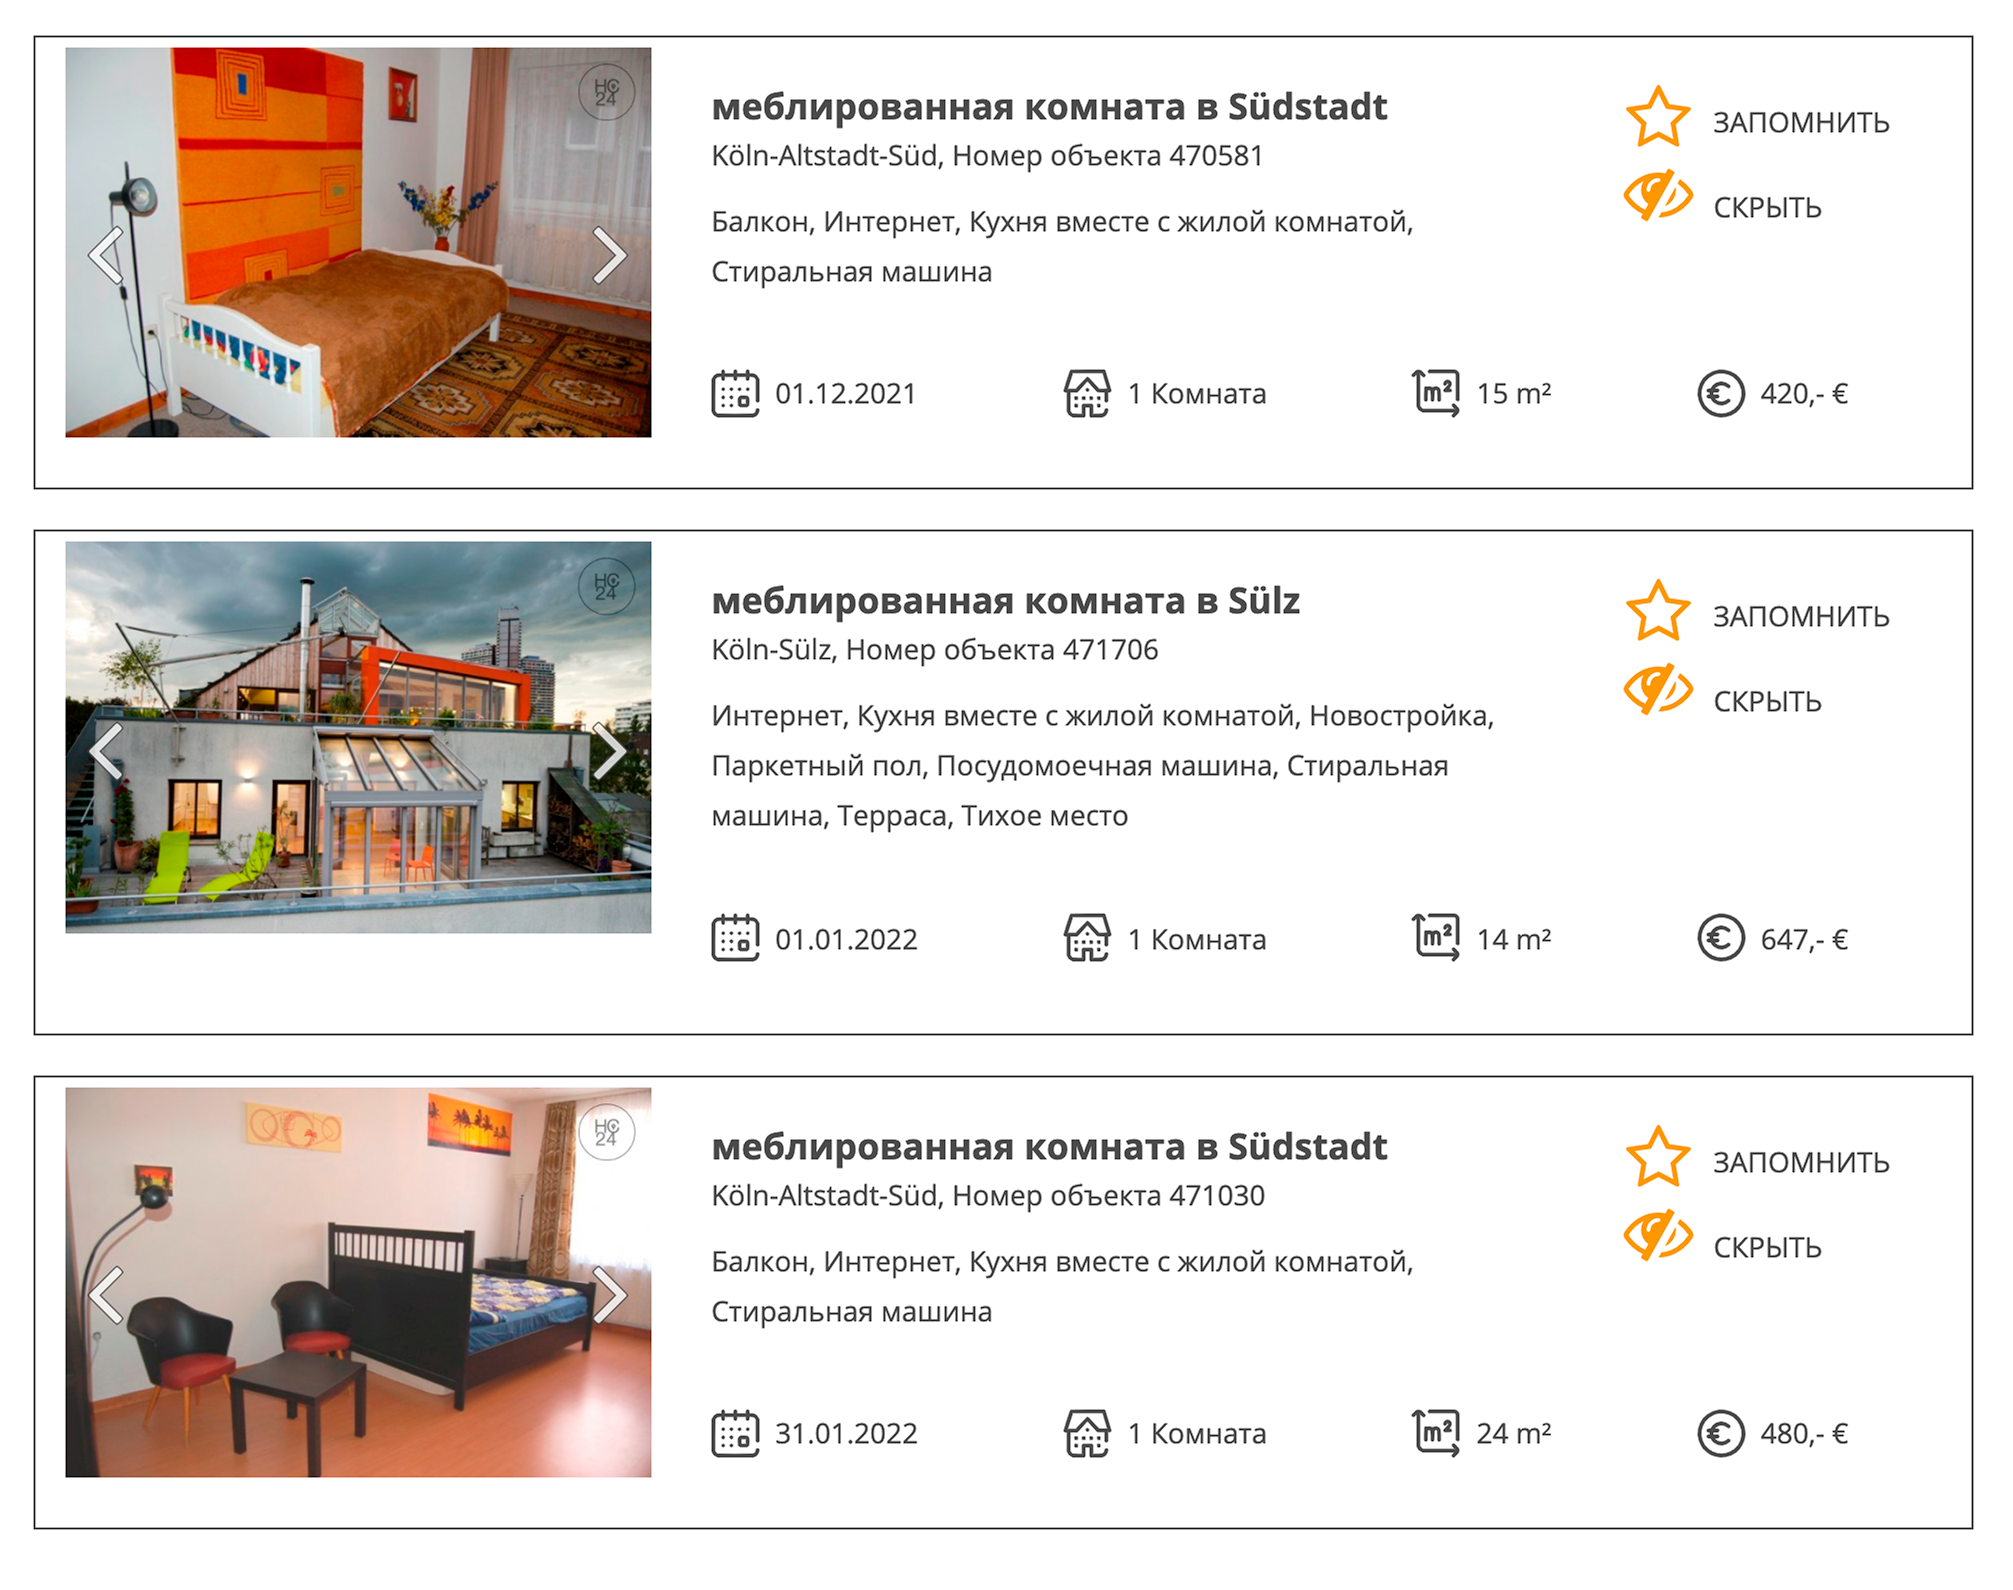 Через агентства не найти комнат дешевле 400 € (34 455 ₽), зато в них гарантированно хорошие условия. Источник: hc24.de